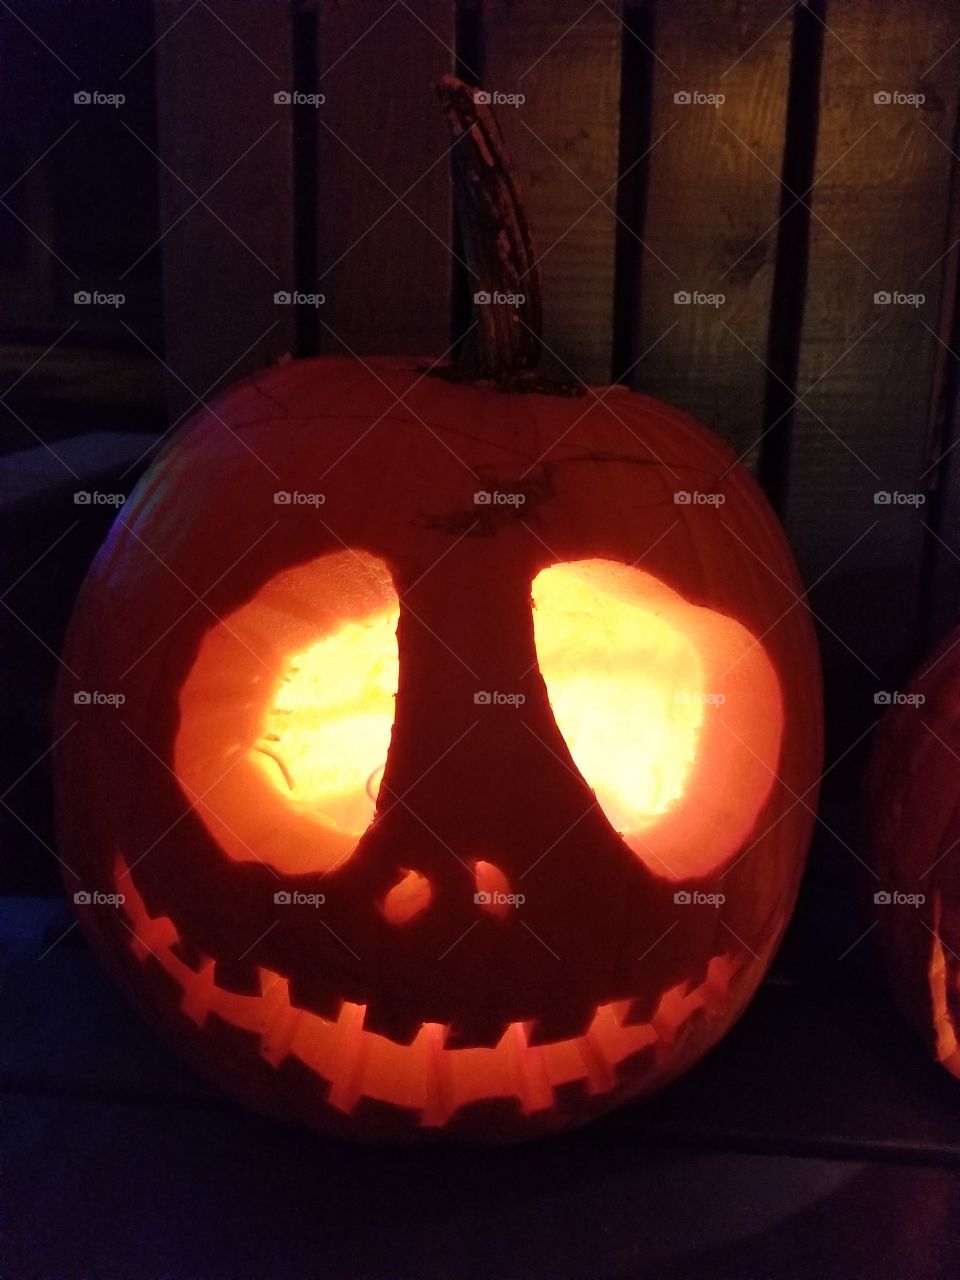 Jack Skeleton carved pumpkin